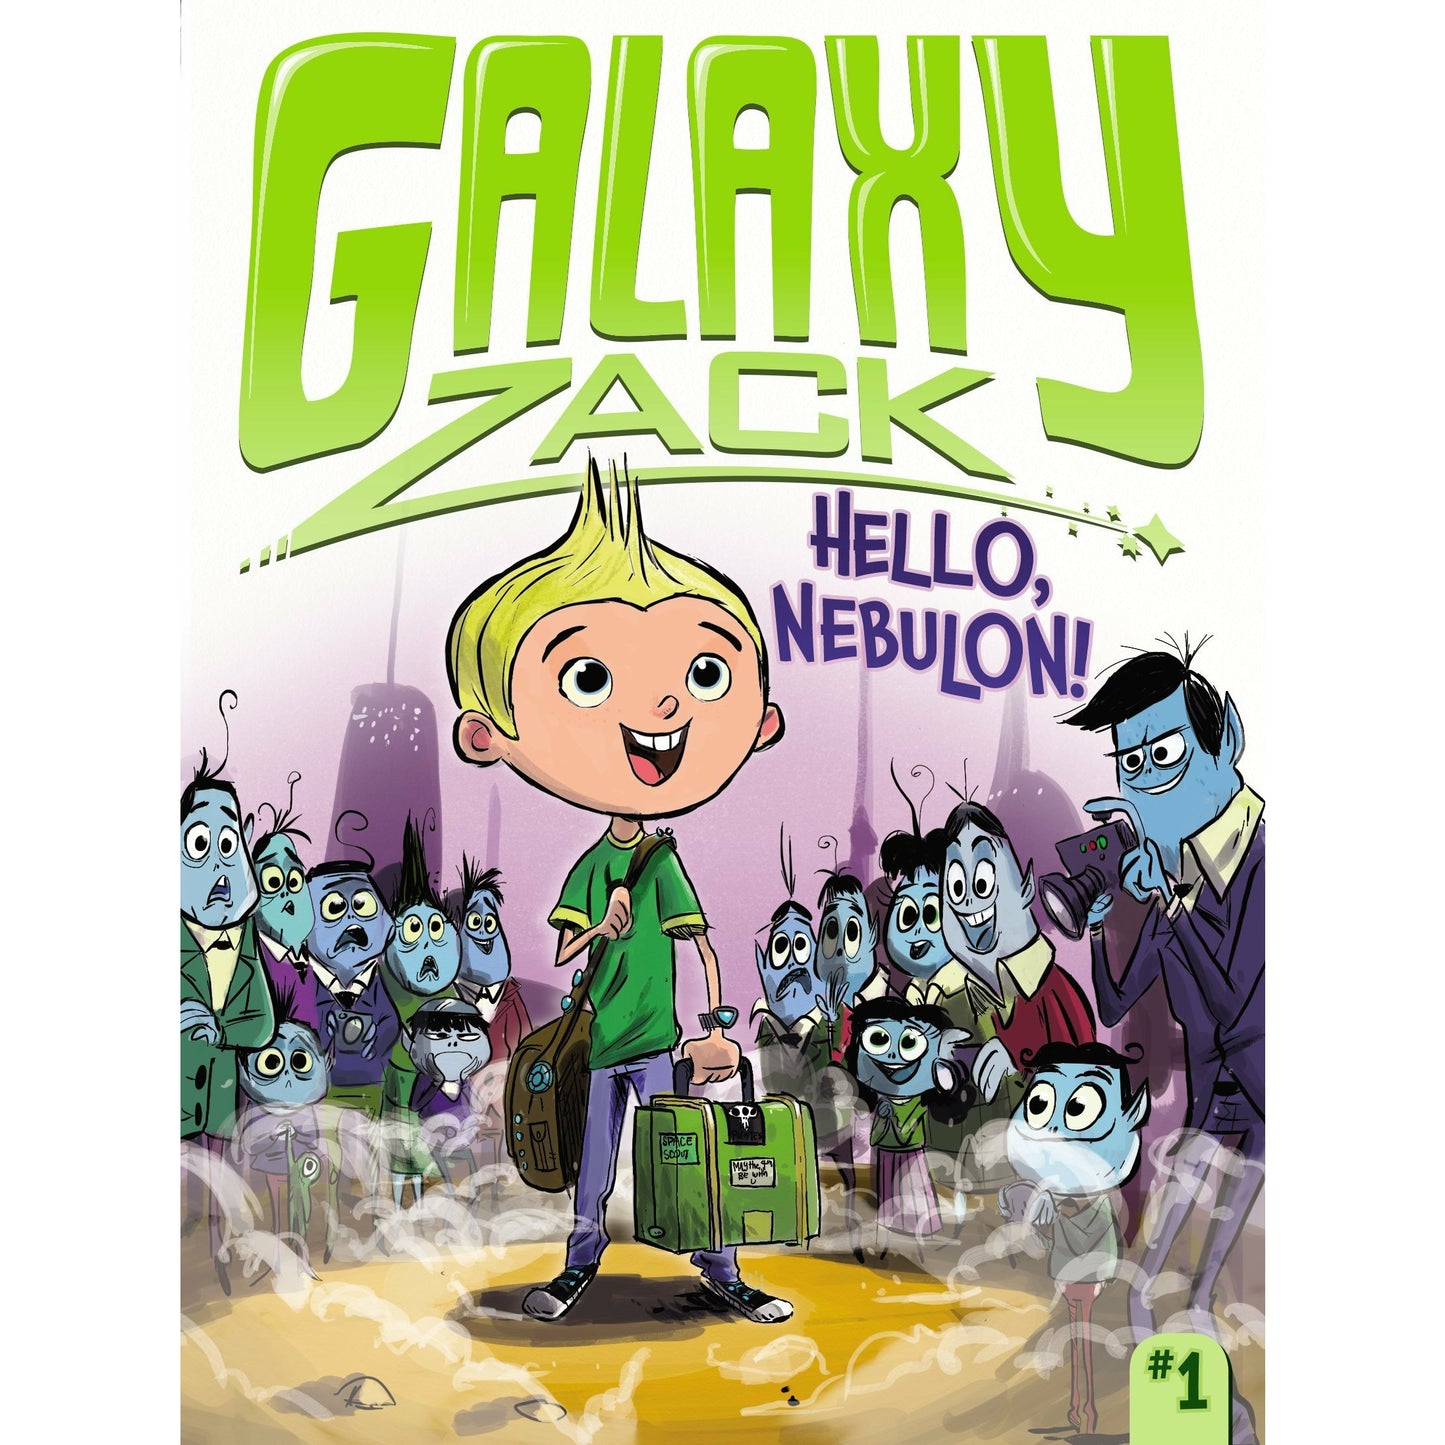 Galaxy Zack #1: Hello, Nebulon!